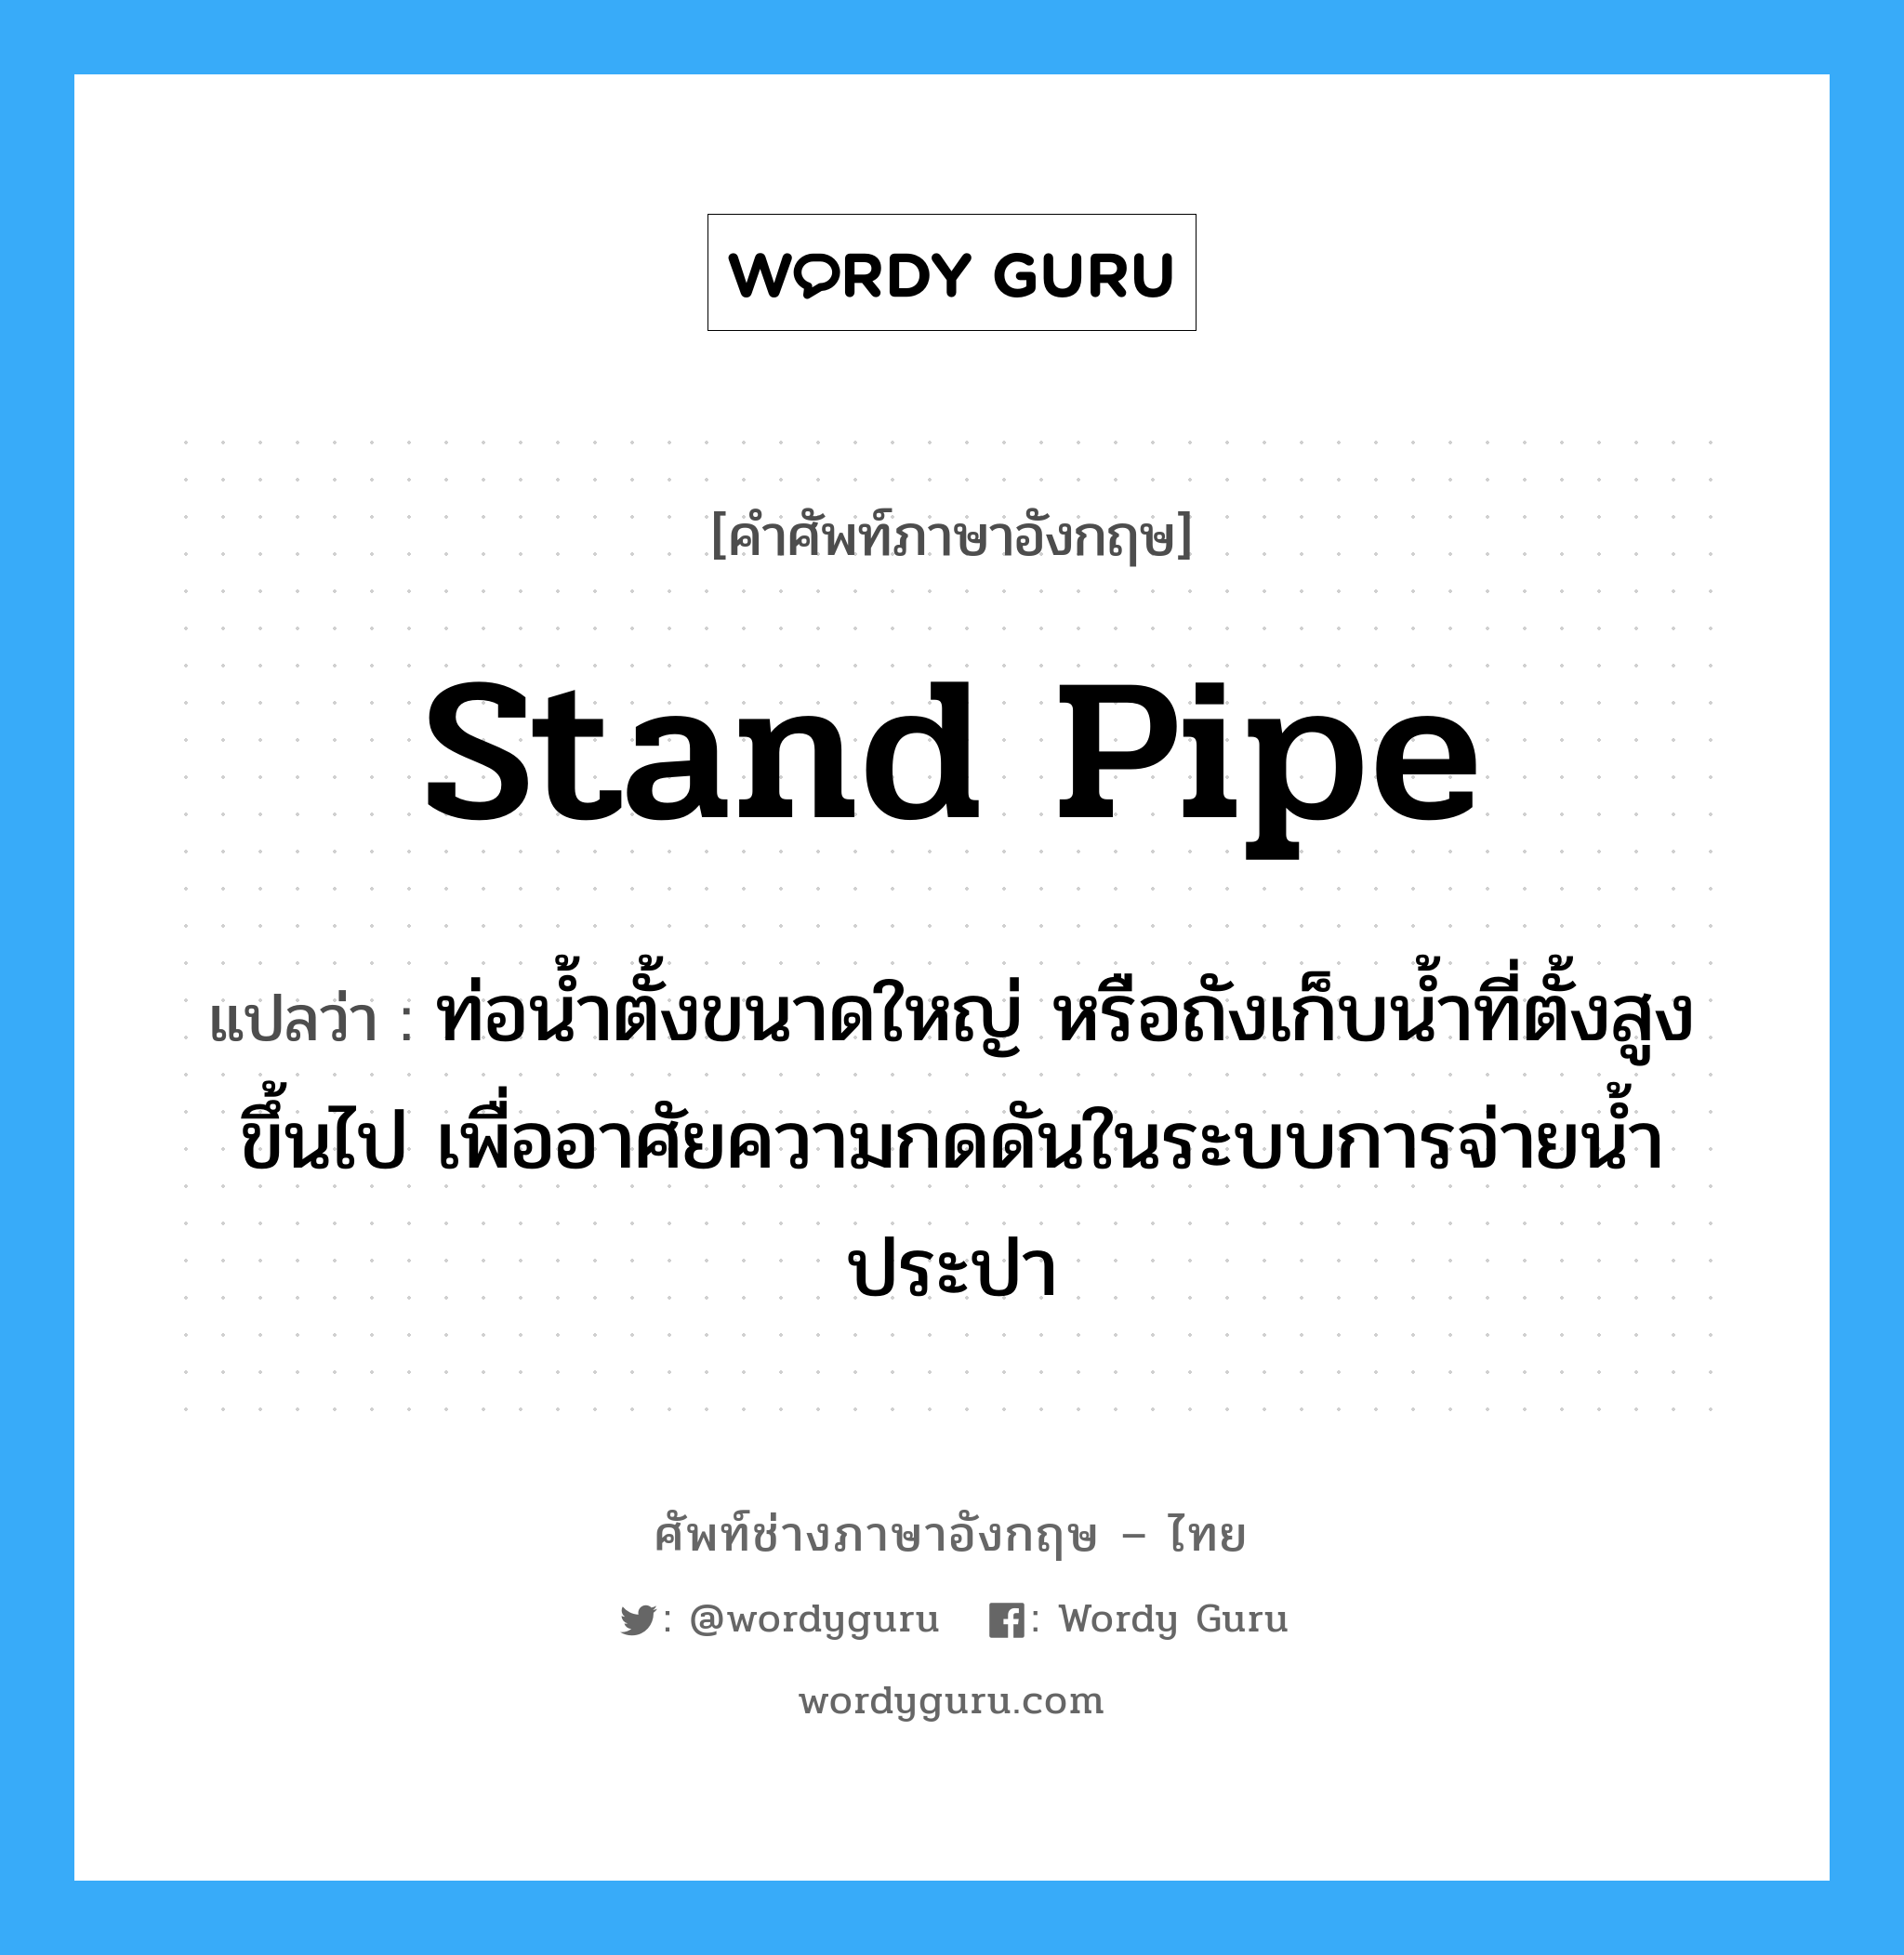 stand pipe แปลว่า?, คำศัพท์ช่างภาษาอังกฤษ - ไทย stand pipe คำศัพท์ภาษาอังกฤษ stand pipe แปลว่า ท่อน้ำตั้งขนาดใหญ่ หรือถังเก็บน้ำที่ตั้งสูงขึ้นไป เพื่ออาศัยความกดดันในระบบการจ่ายน้ำประปา